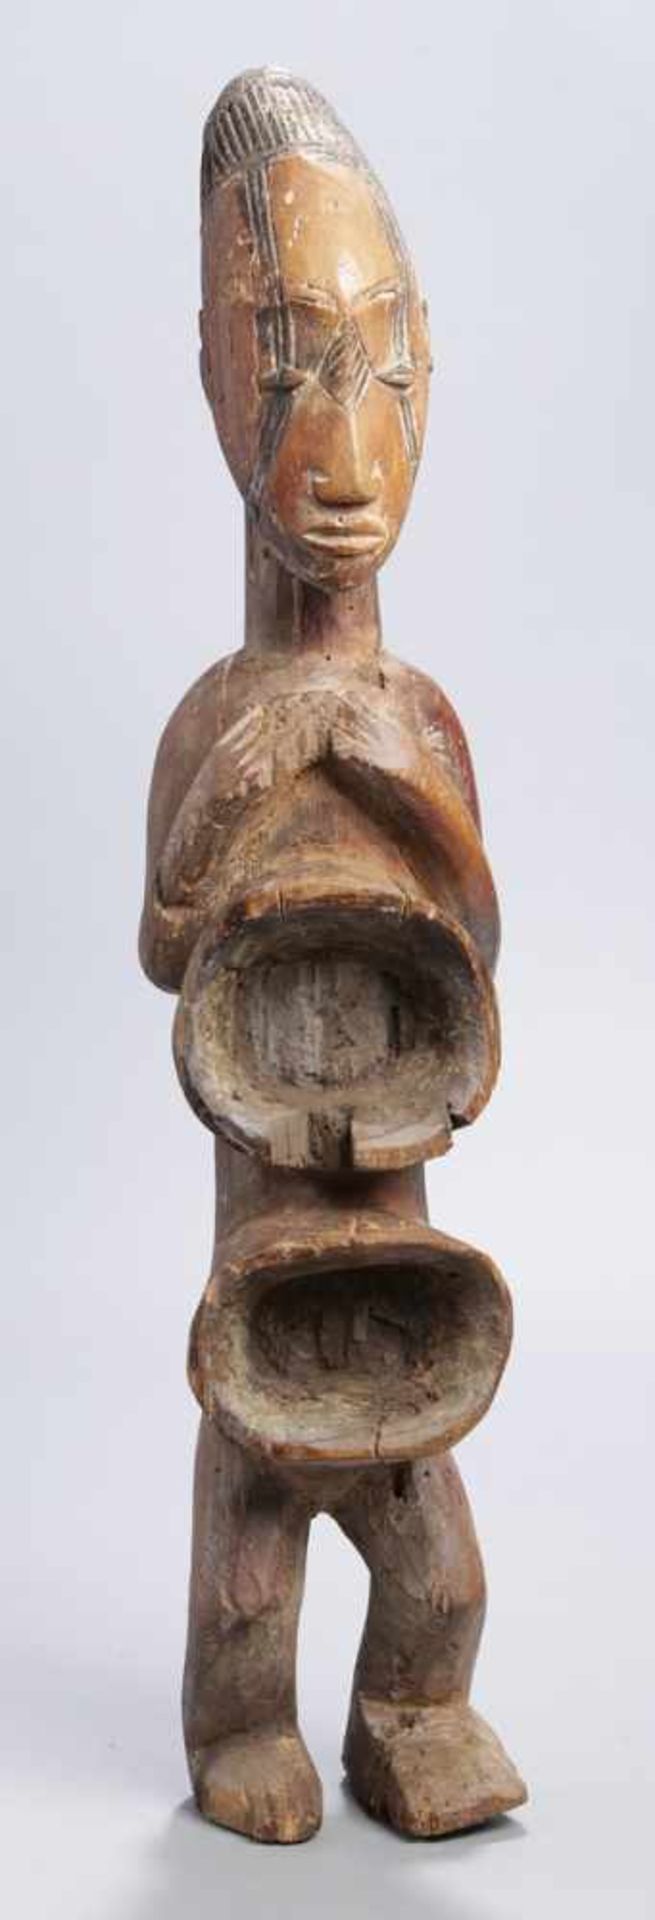 Kult-Figur bzw. Ritualgefäß, Mangbetu, Kongo, plastische, stehende Darstellung mit vor<b